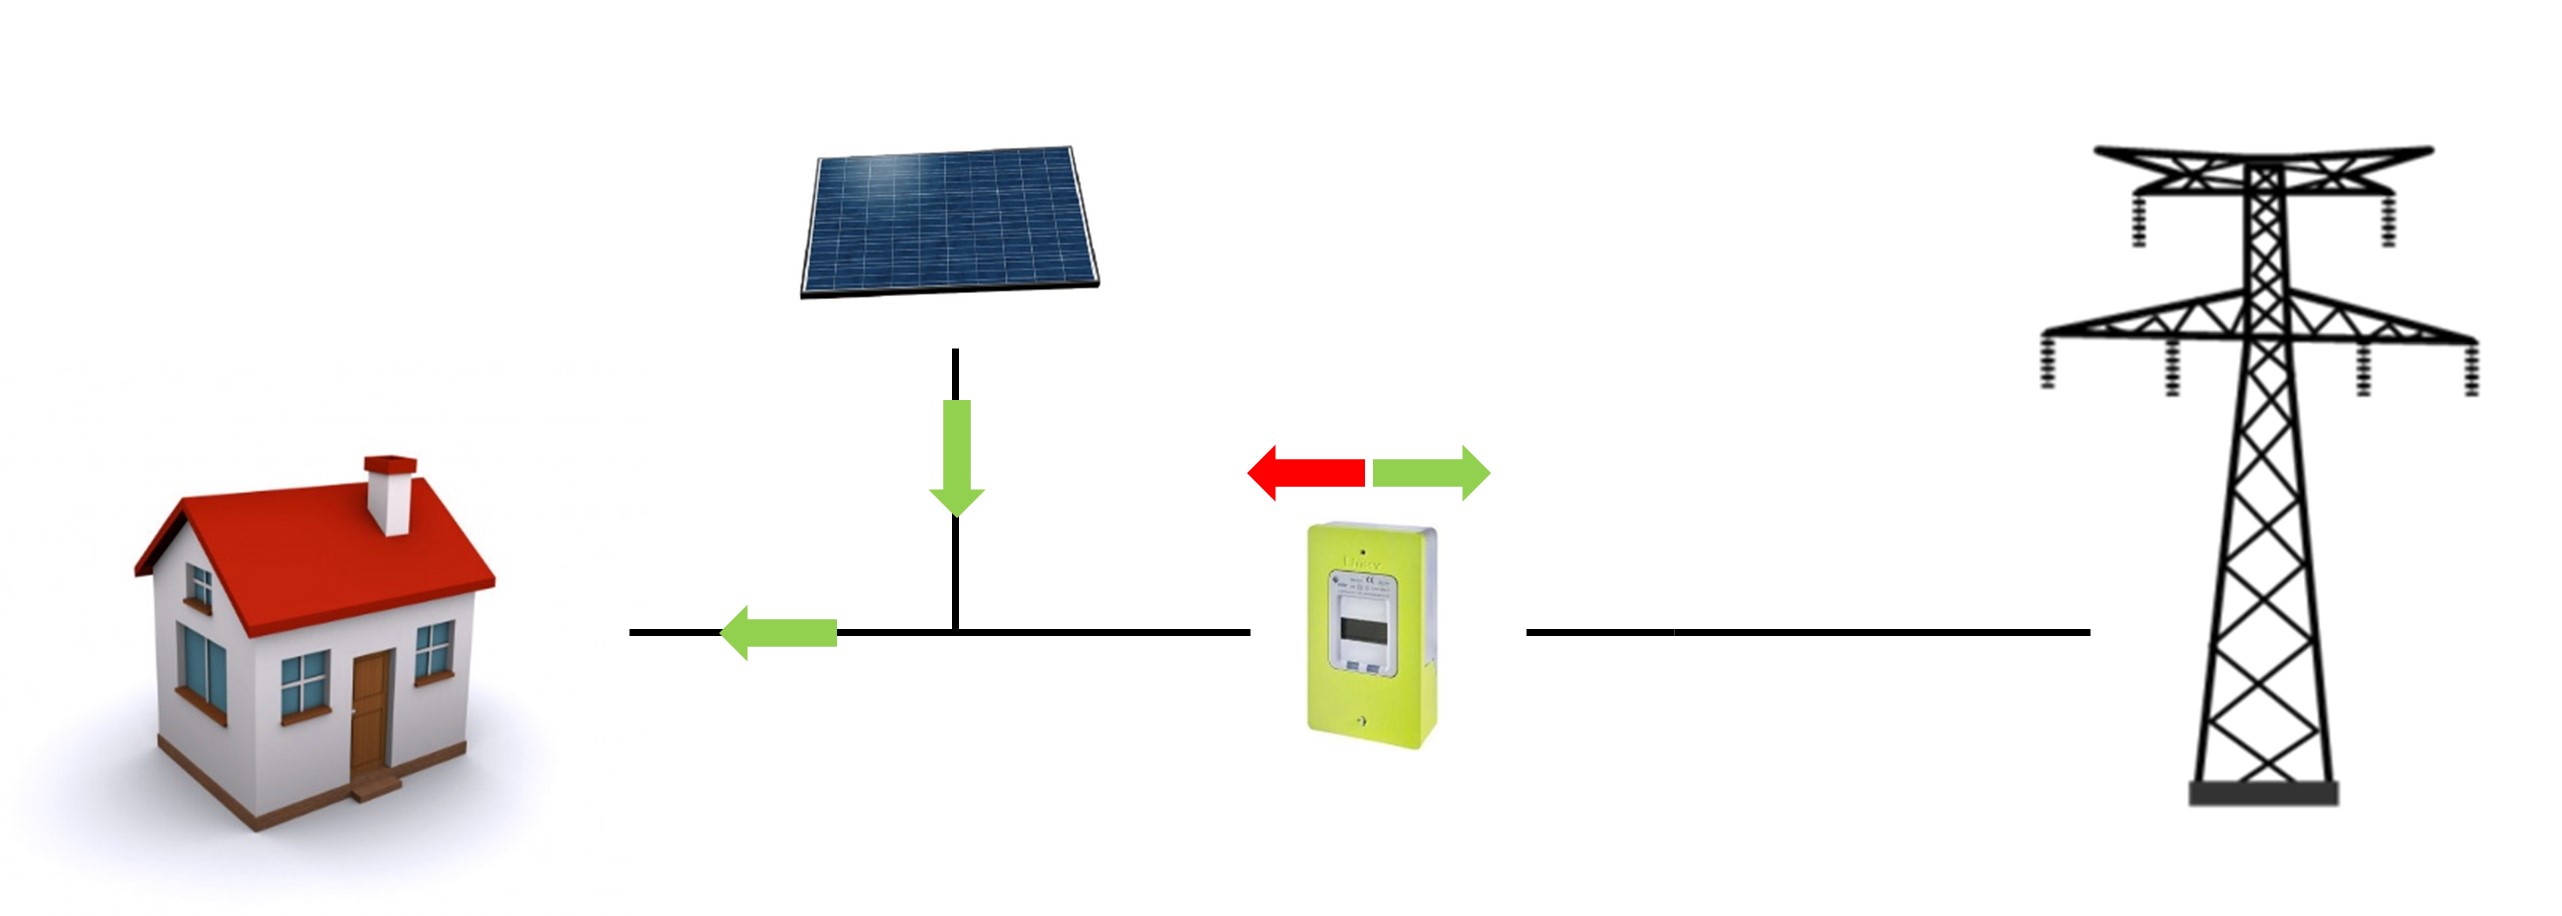 Schéma Solaire photovoltaique Auto Consommation +Revente de surplus